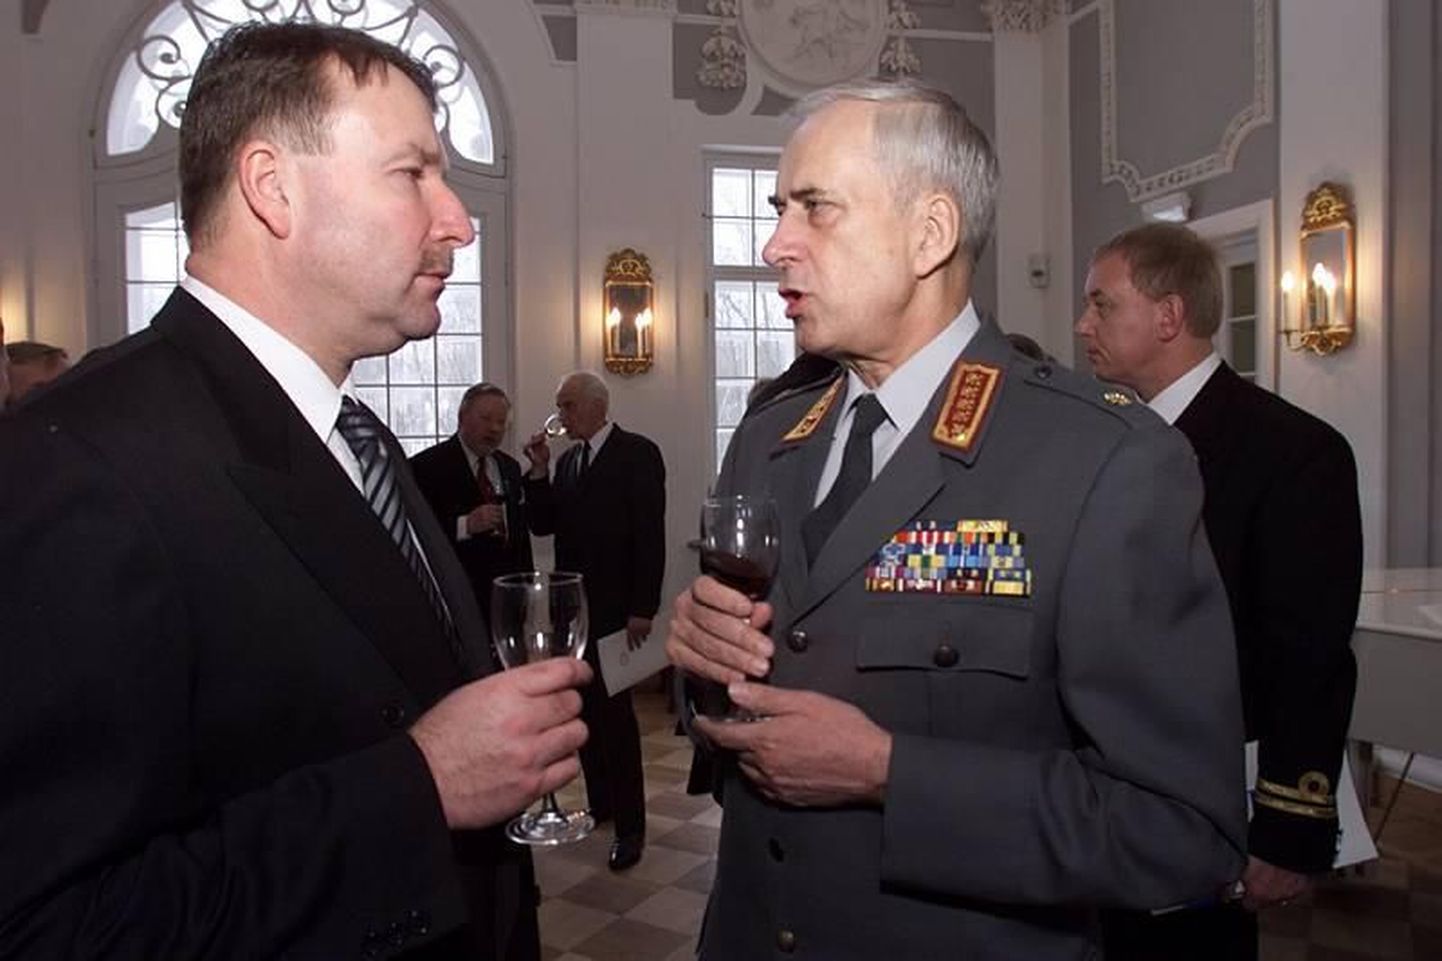 Soome Kaitseväe ülem aastatel 1994-2001, kindral Johan Hägglund (paremal) vestleb Tiit Tammsaarega.